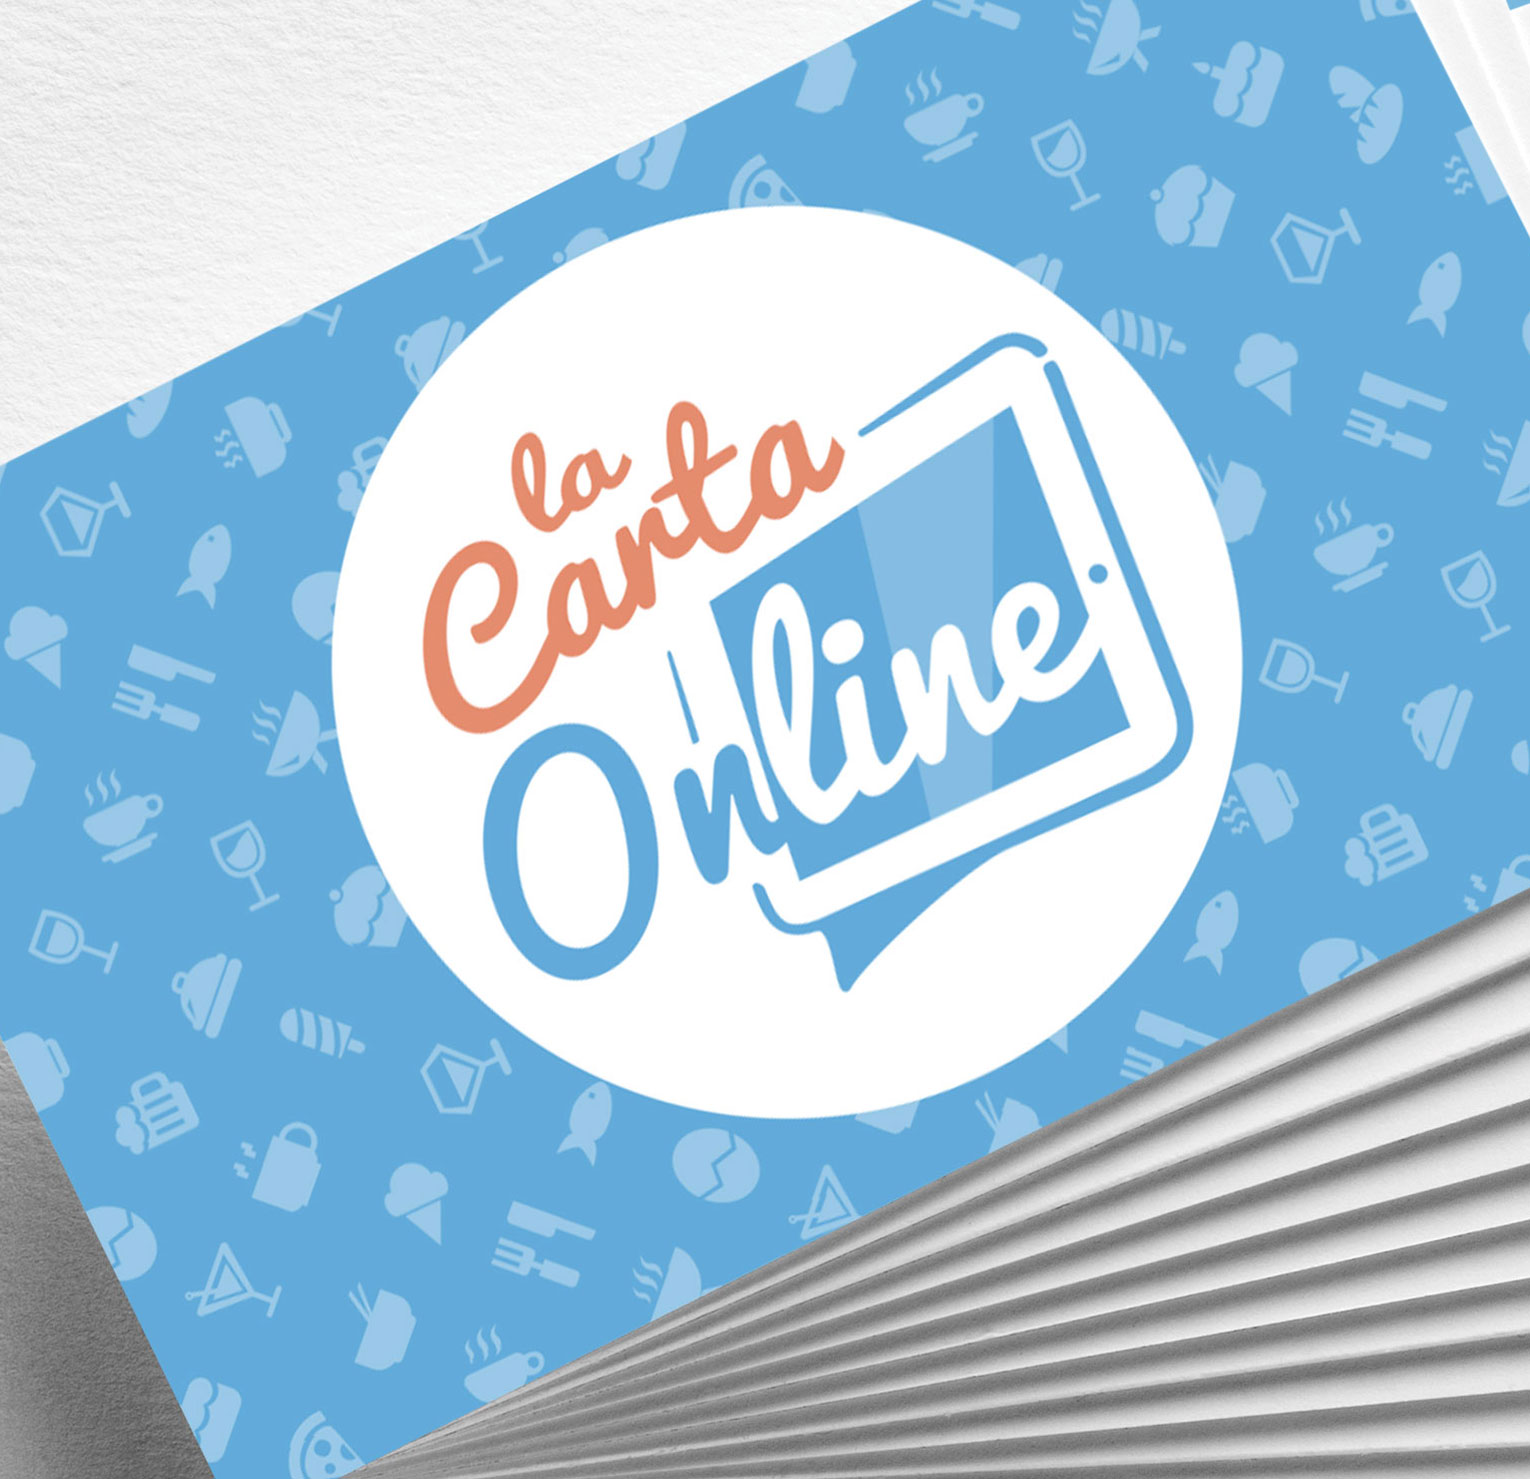 Logotipo La Carta Online